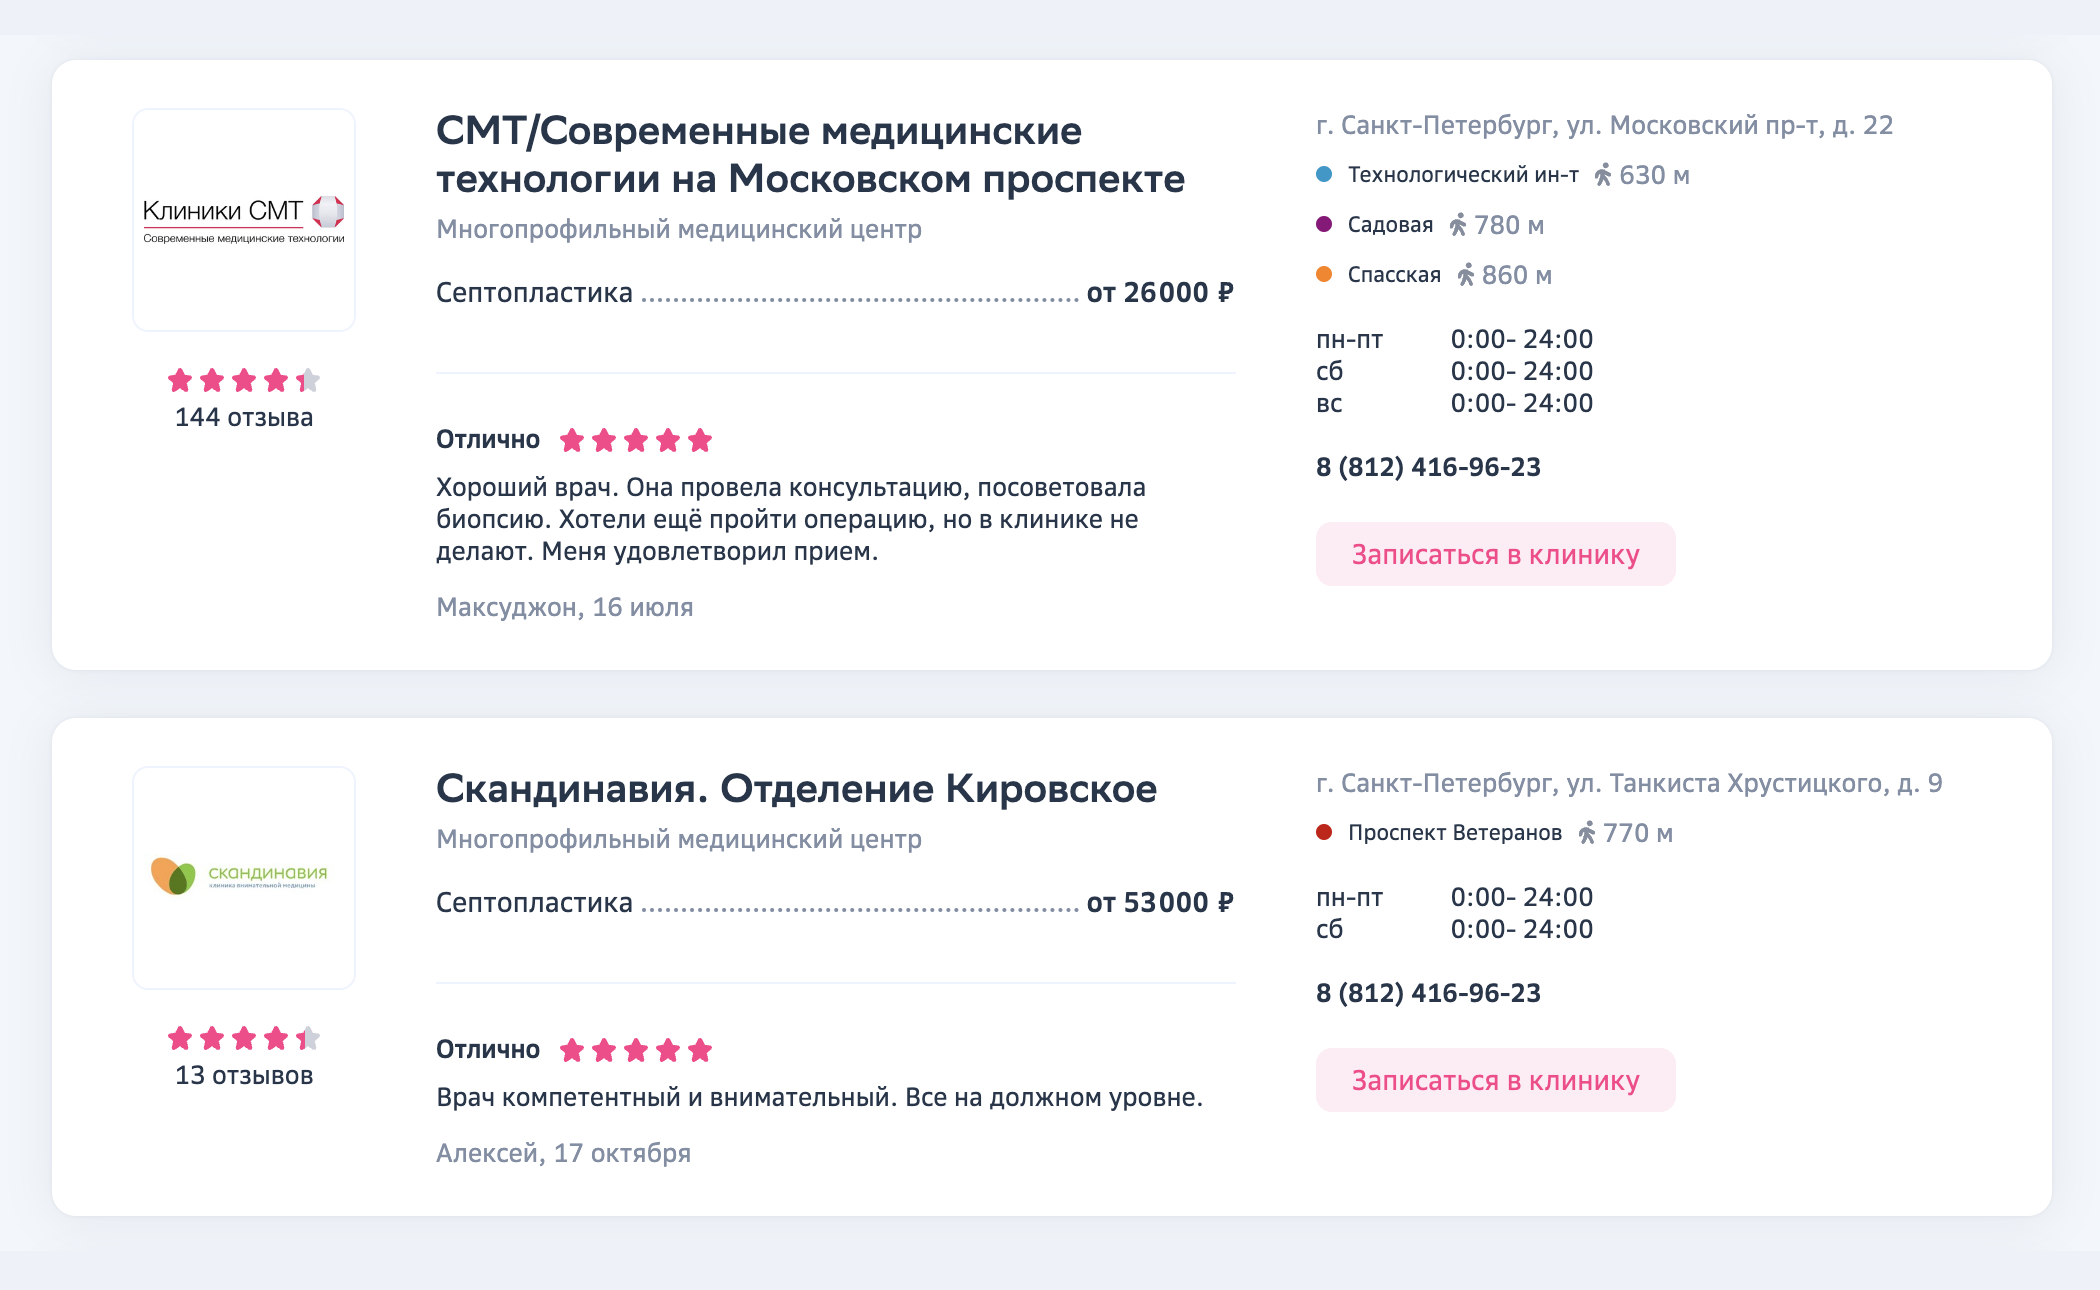 Цены на септопластику в частных клиниках Санкт-Петербурга. Источник: docdoc.ru